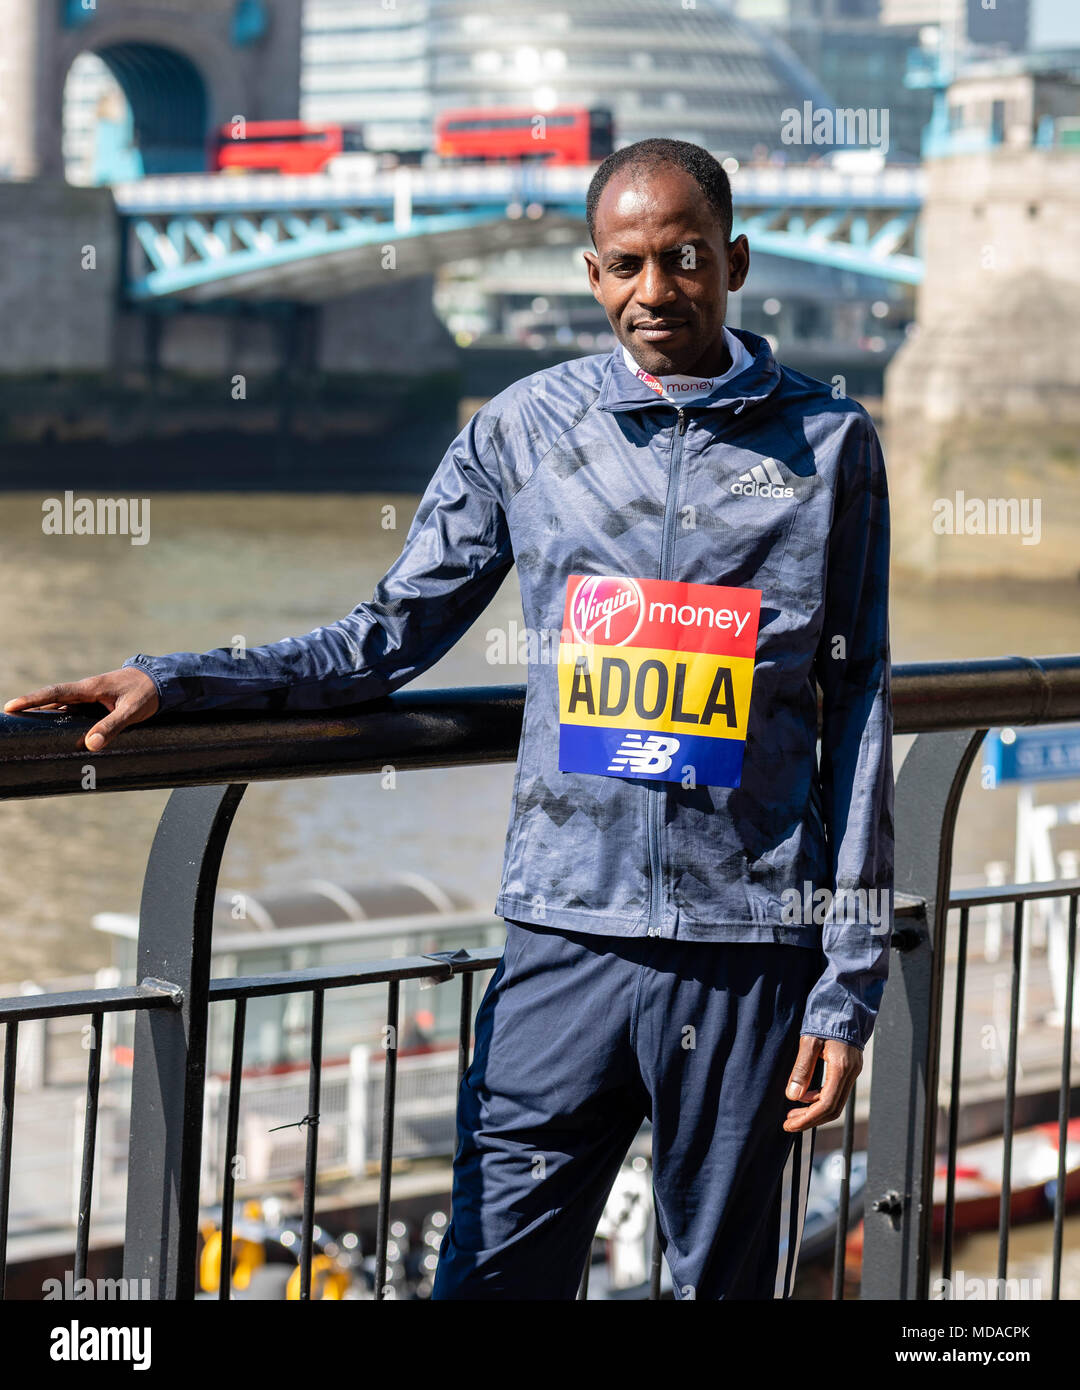 Londra, Regno Unito. 19 aprile 2018, Londra, Regno Unito. Maratona, Uomini Elite Guye Adola (Etiopia, Credito: Ian Davidson/Alamy Live News Foto Stock